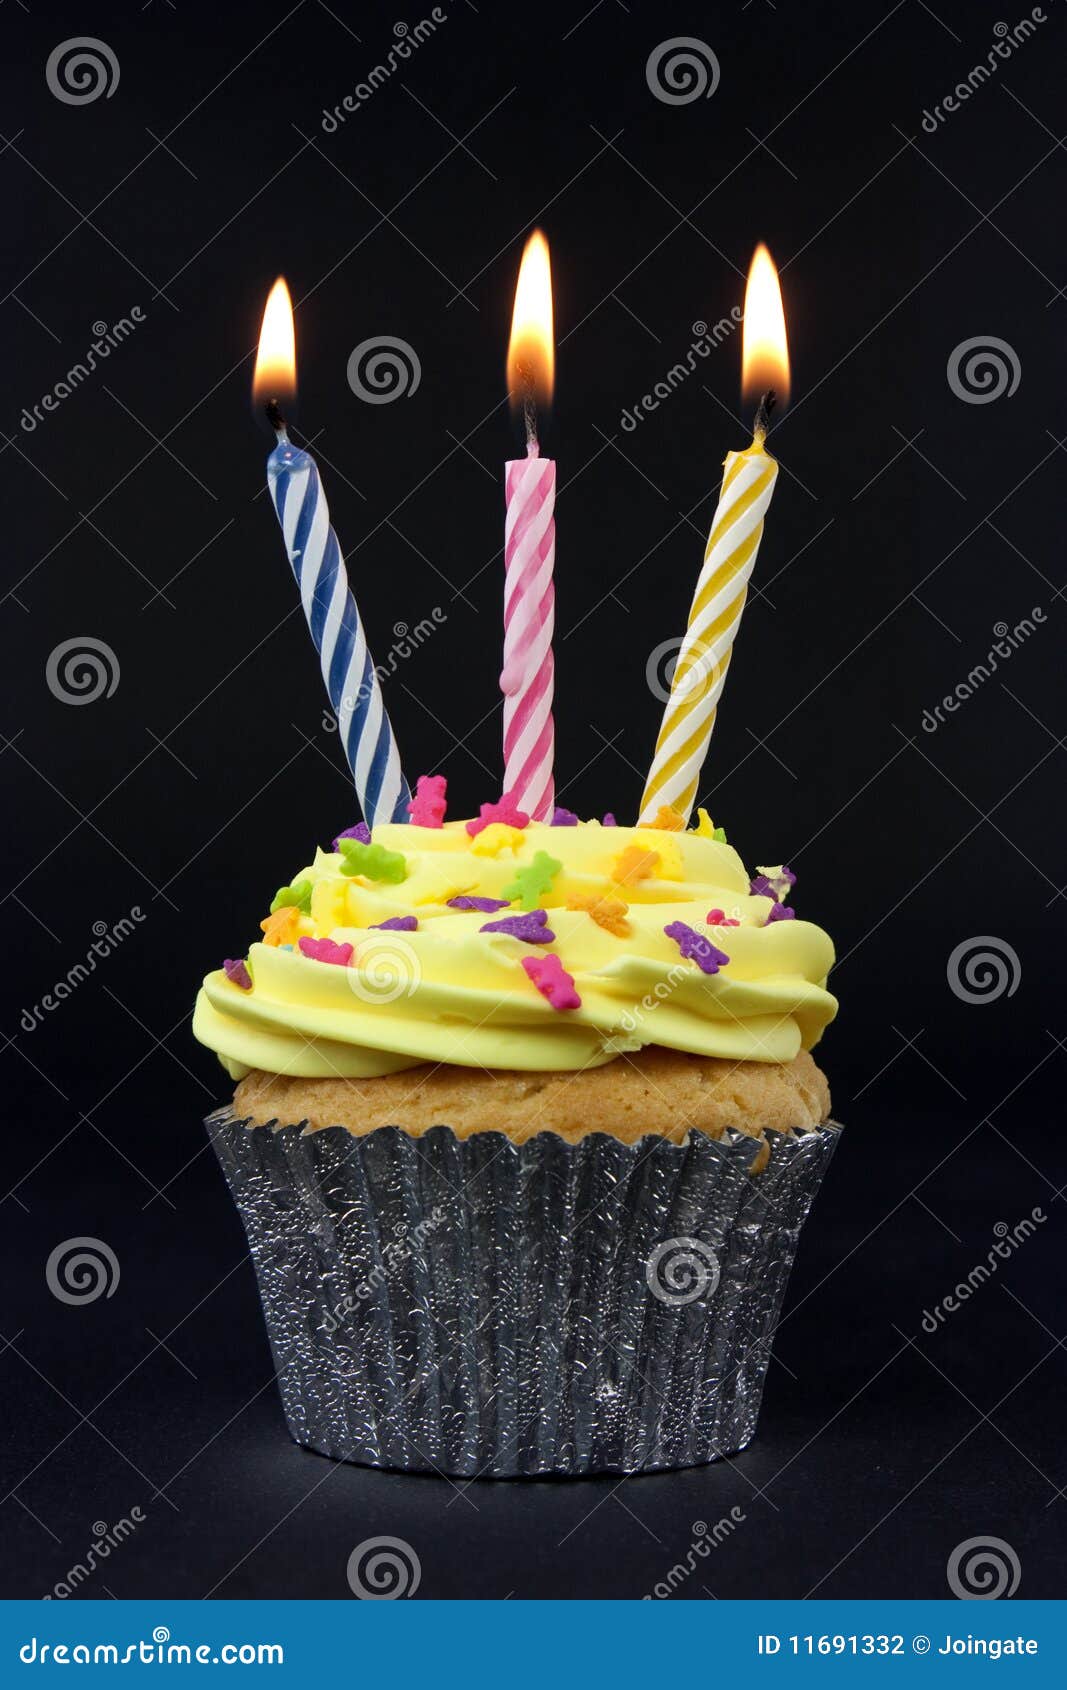 3 ans=3 bougies d'anniversaire pour la cantine de Mbourokh